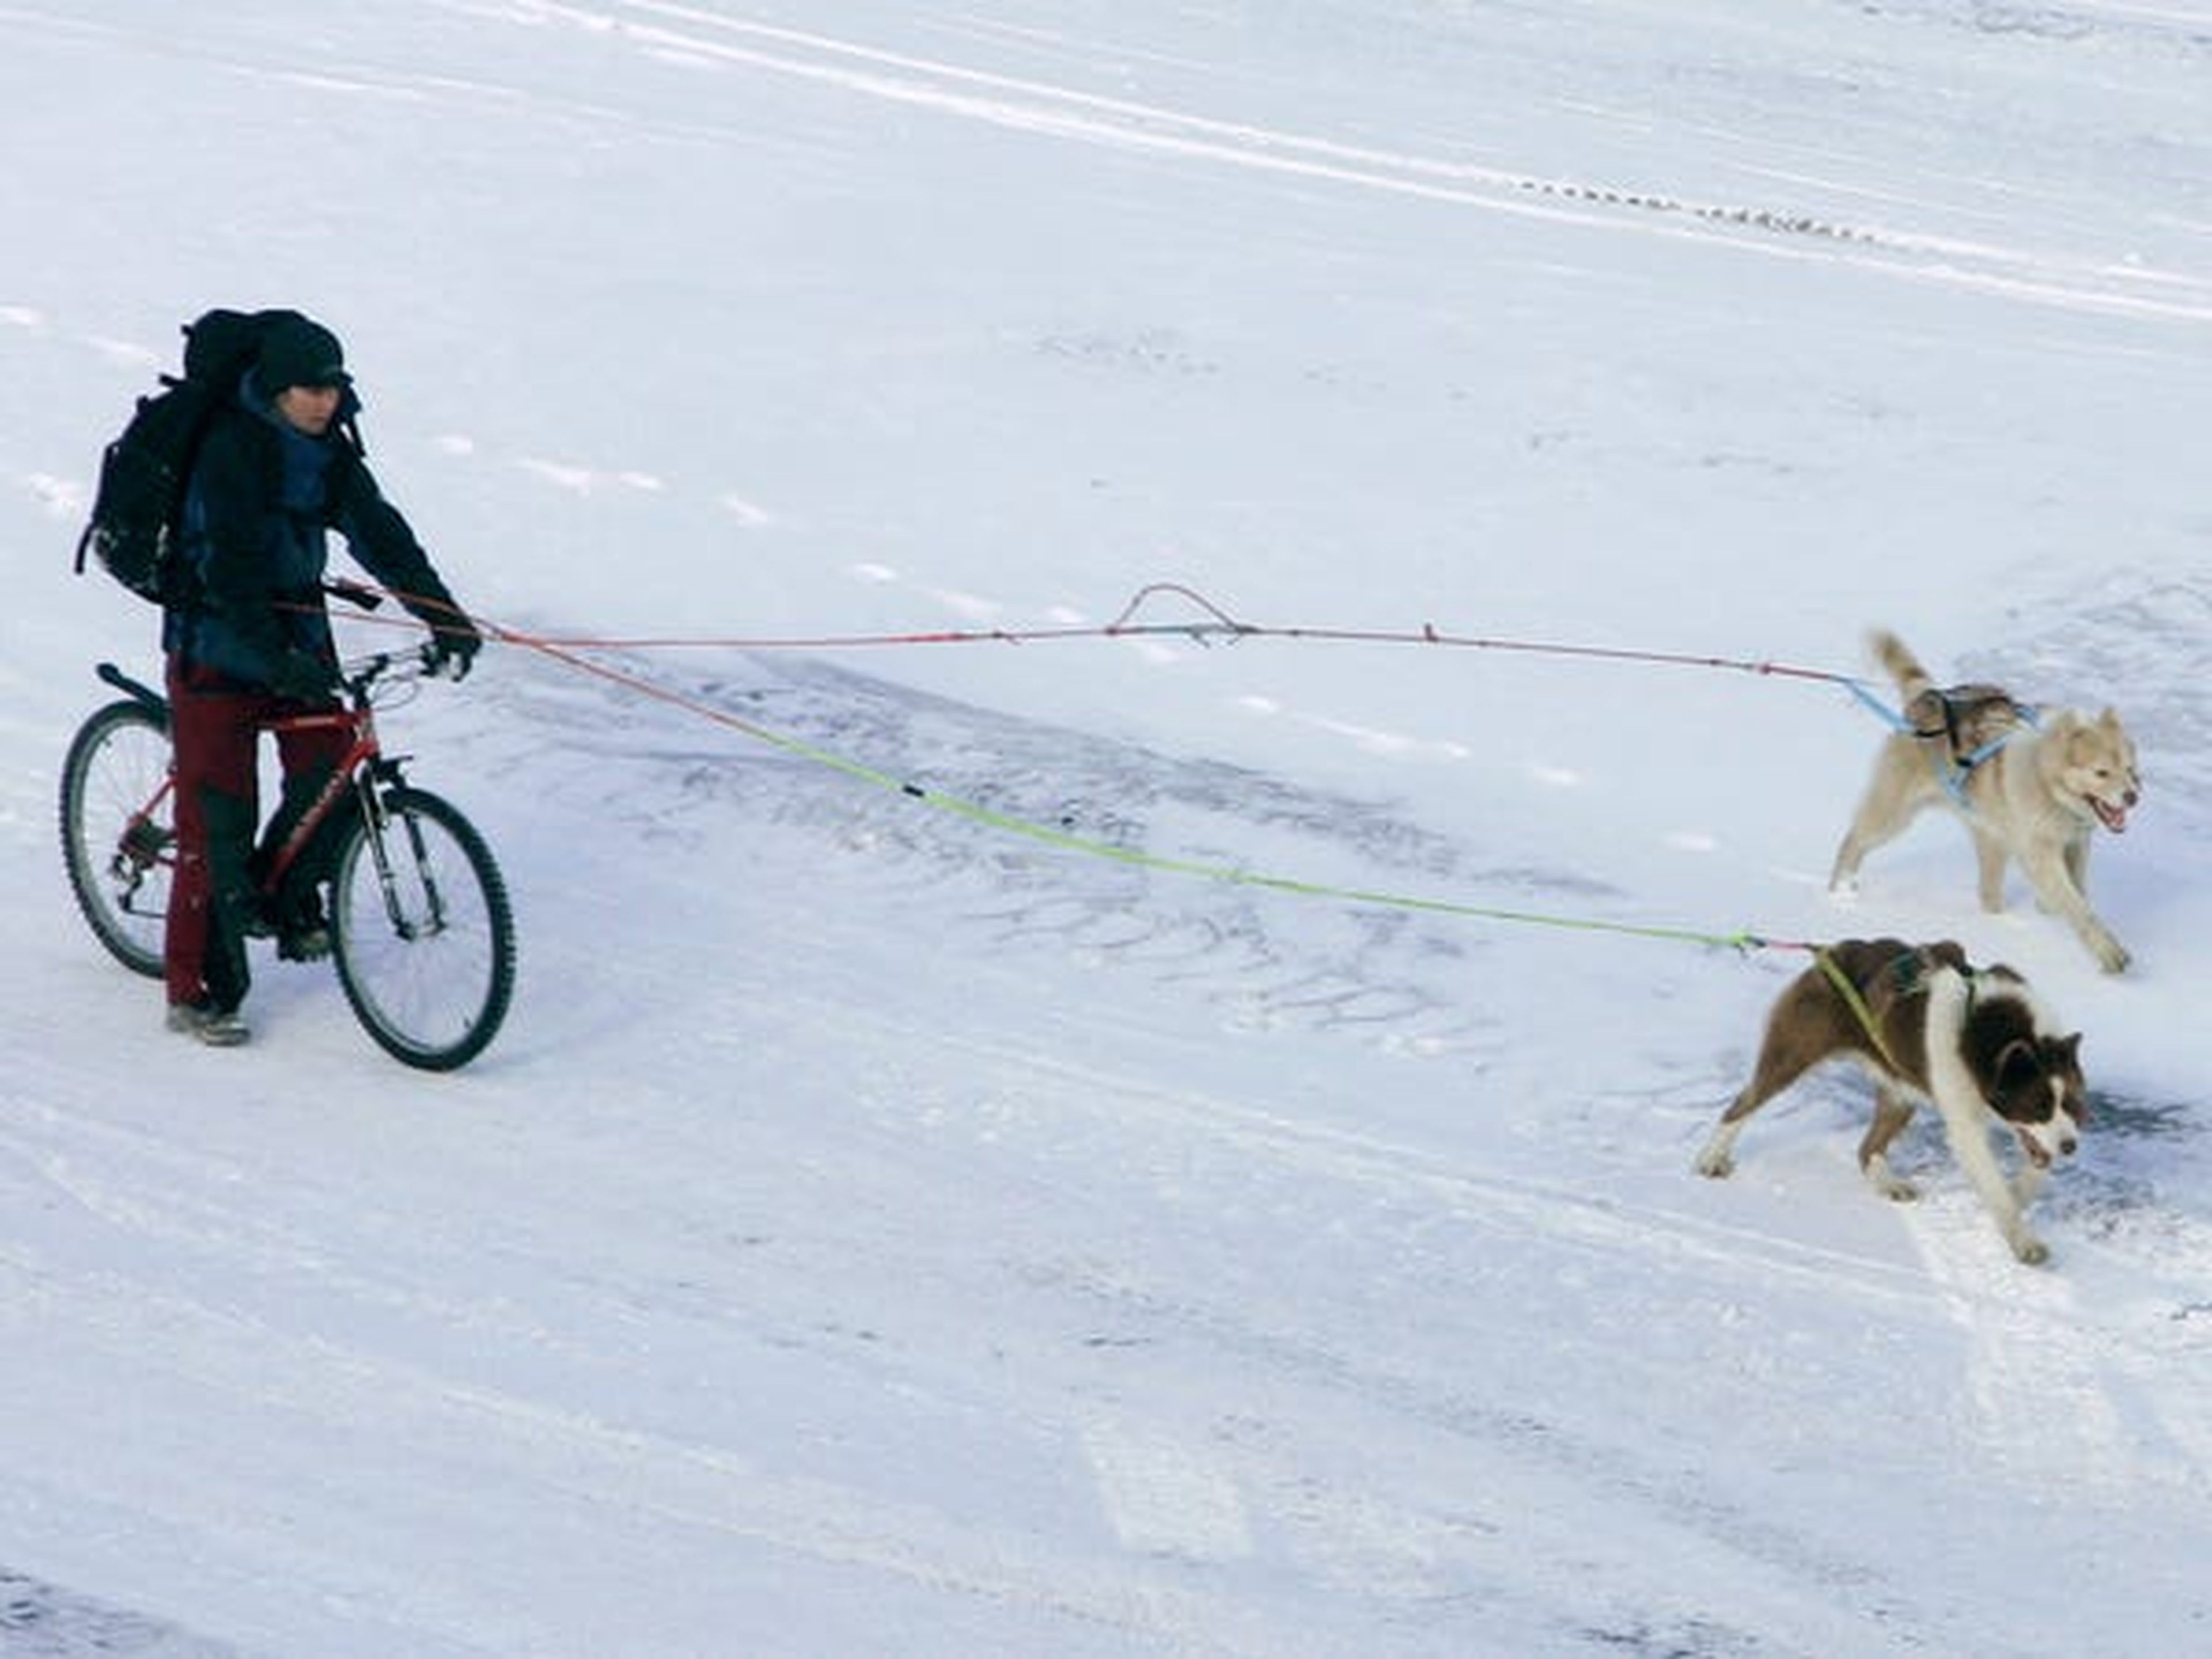 Sin embargo, algunos prefieren métodos de viaje más tradicionales. El archipiélago tiene más de 1.000 perros polares, que son básicamente atletas de élite, a veces corren más de 100 km por día durante semanas.